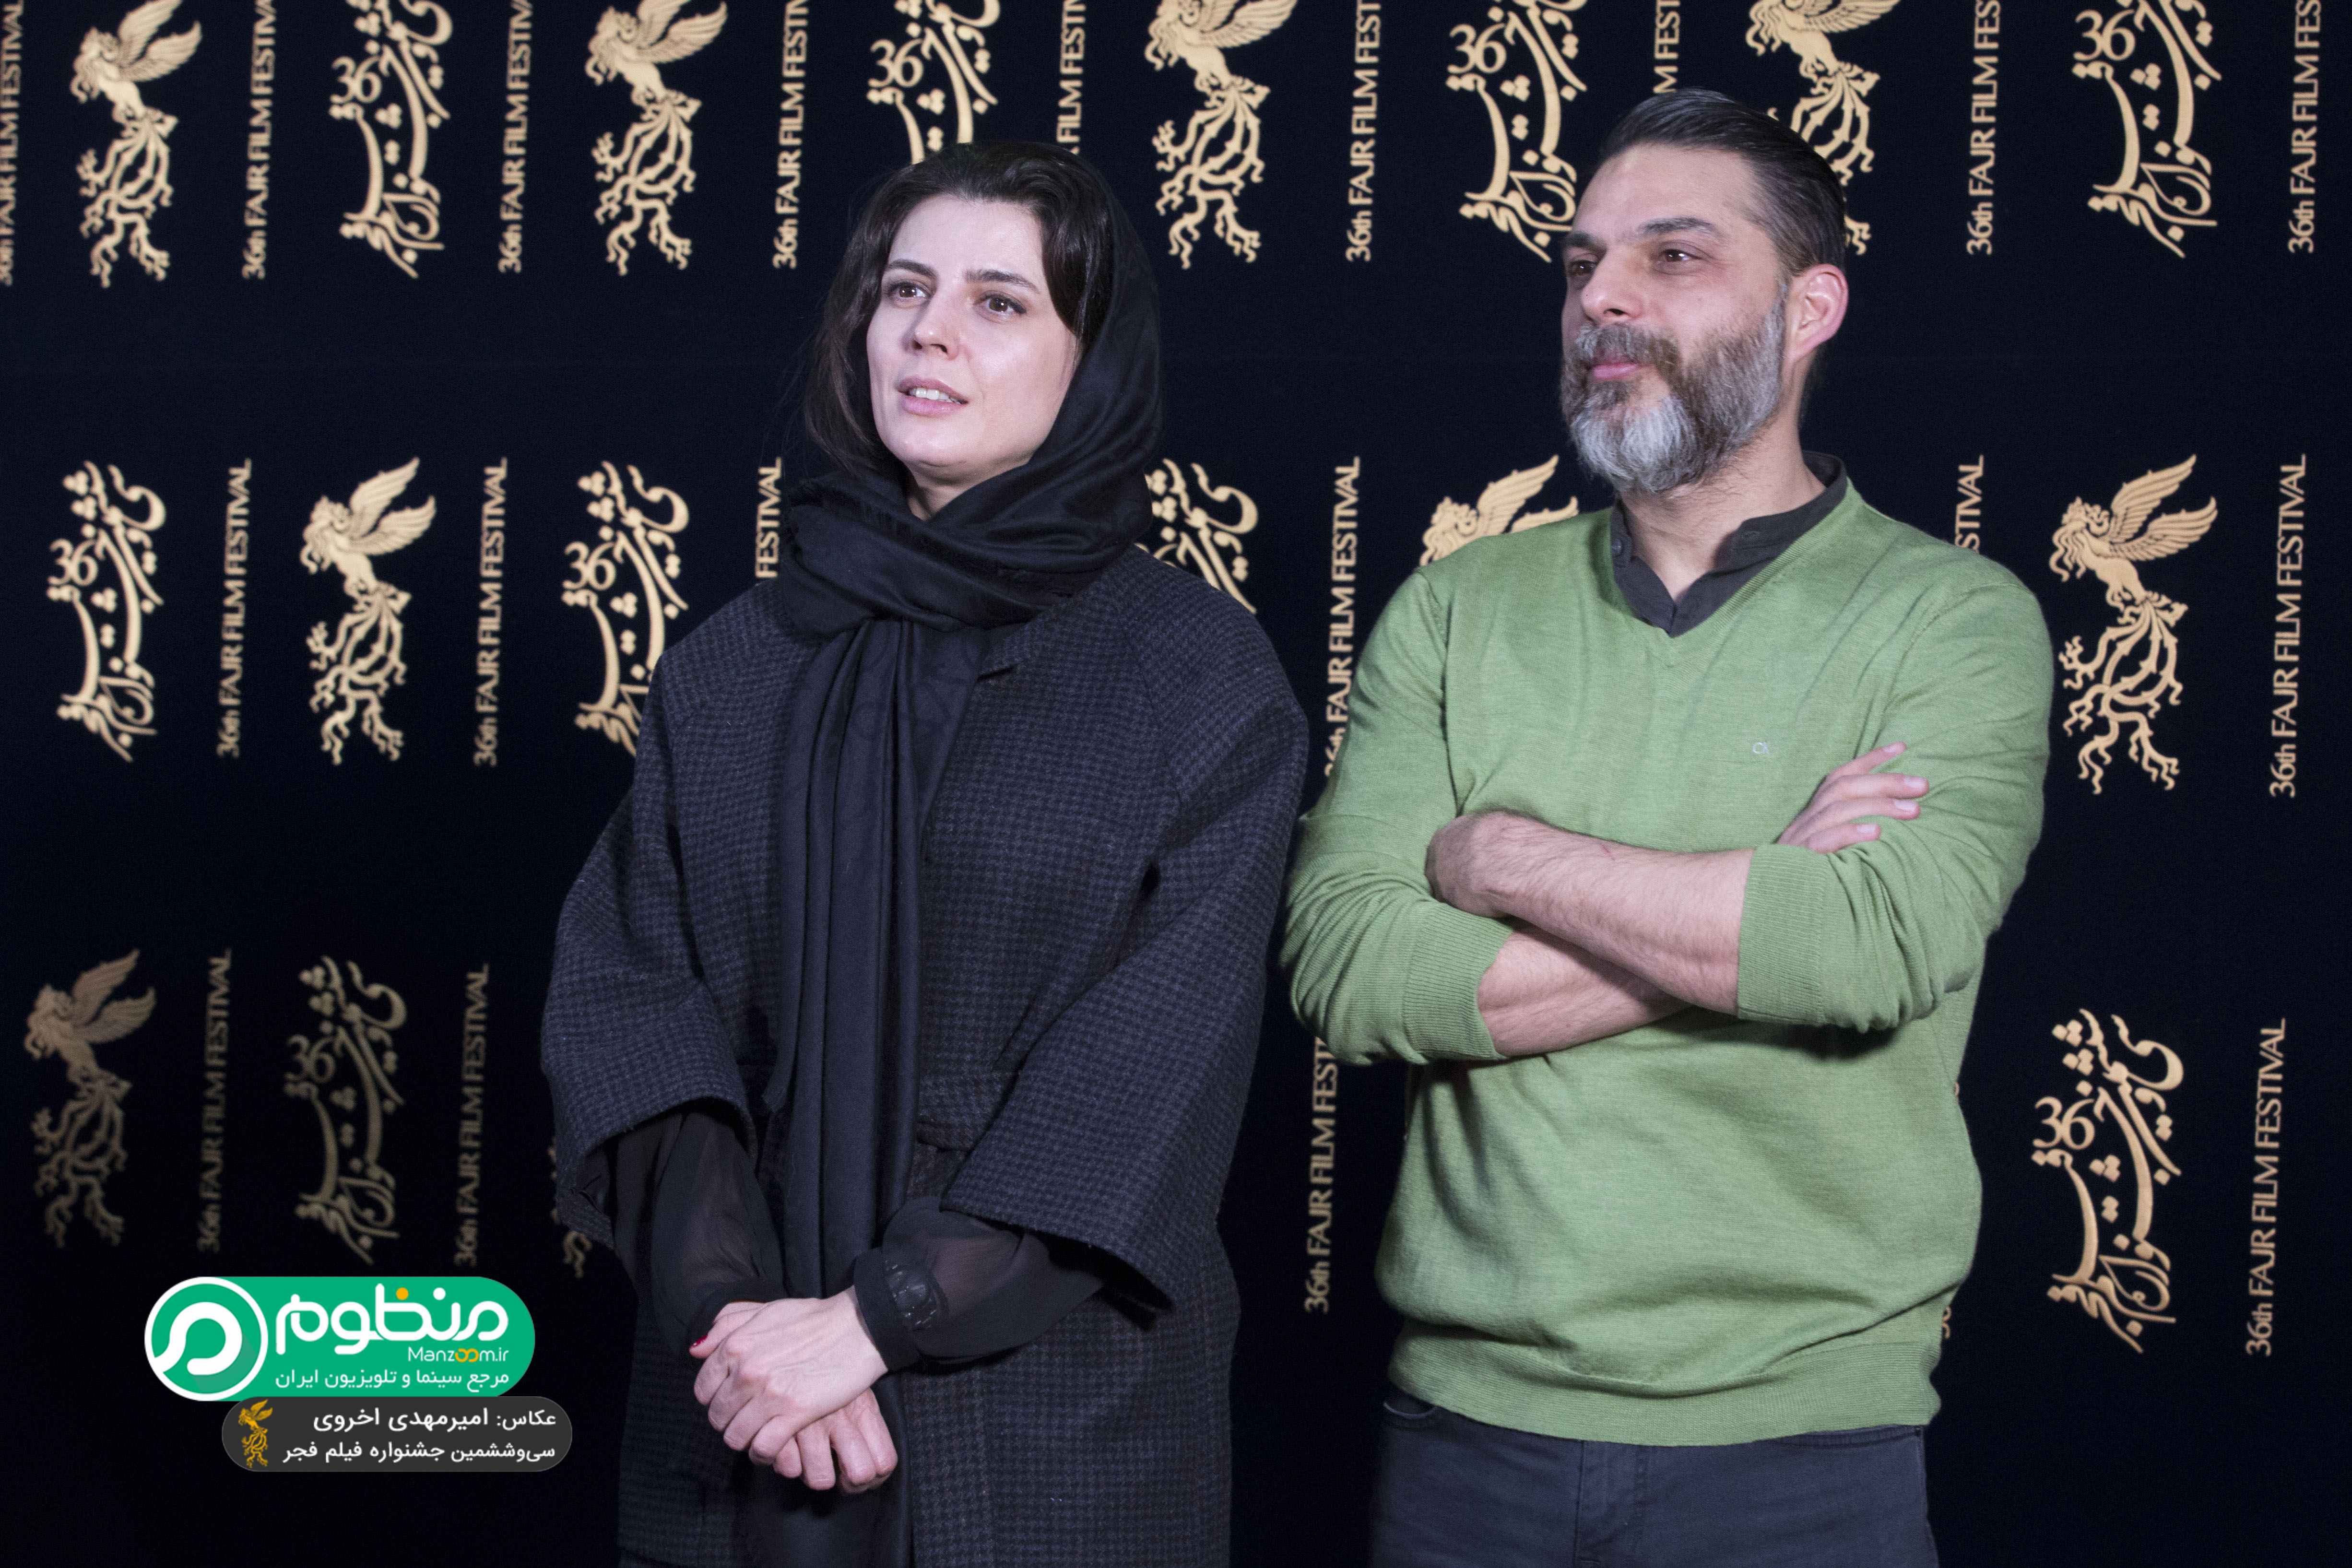 لیلا حاتمی در جشنواره فیلم سینمایی بمب؛ یک عاشقانه به همراه پیمان معادی